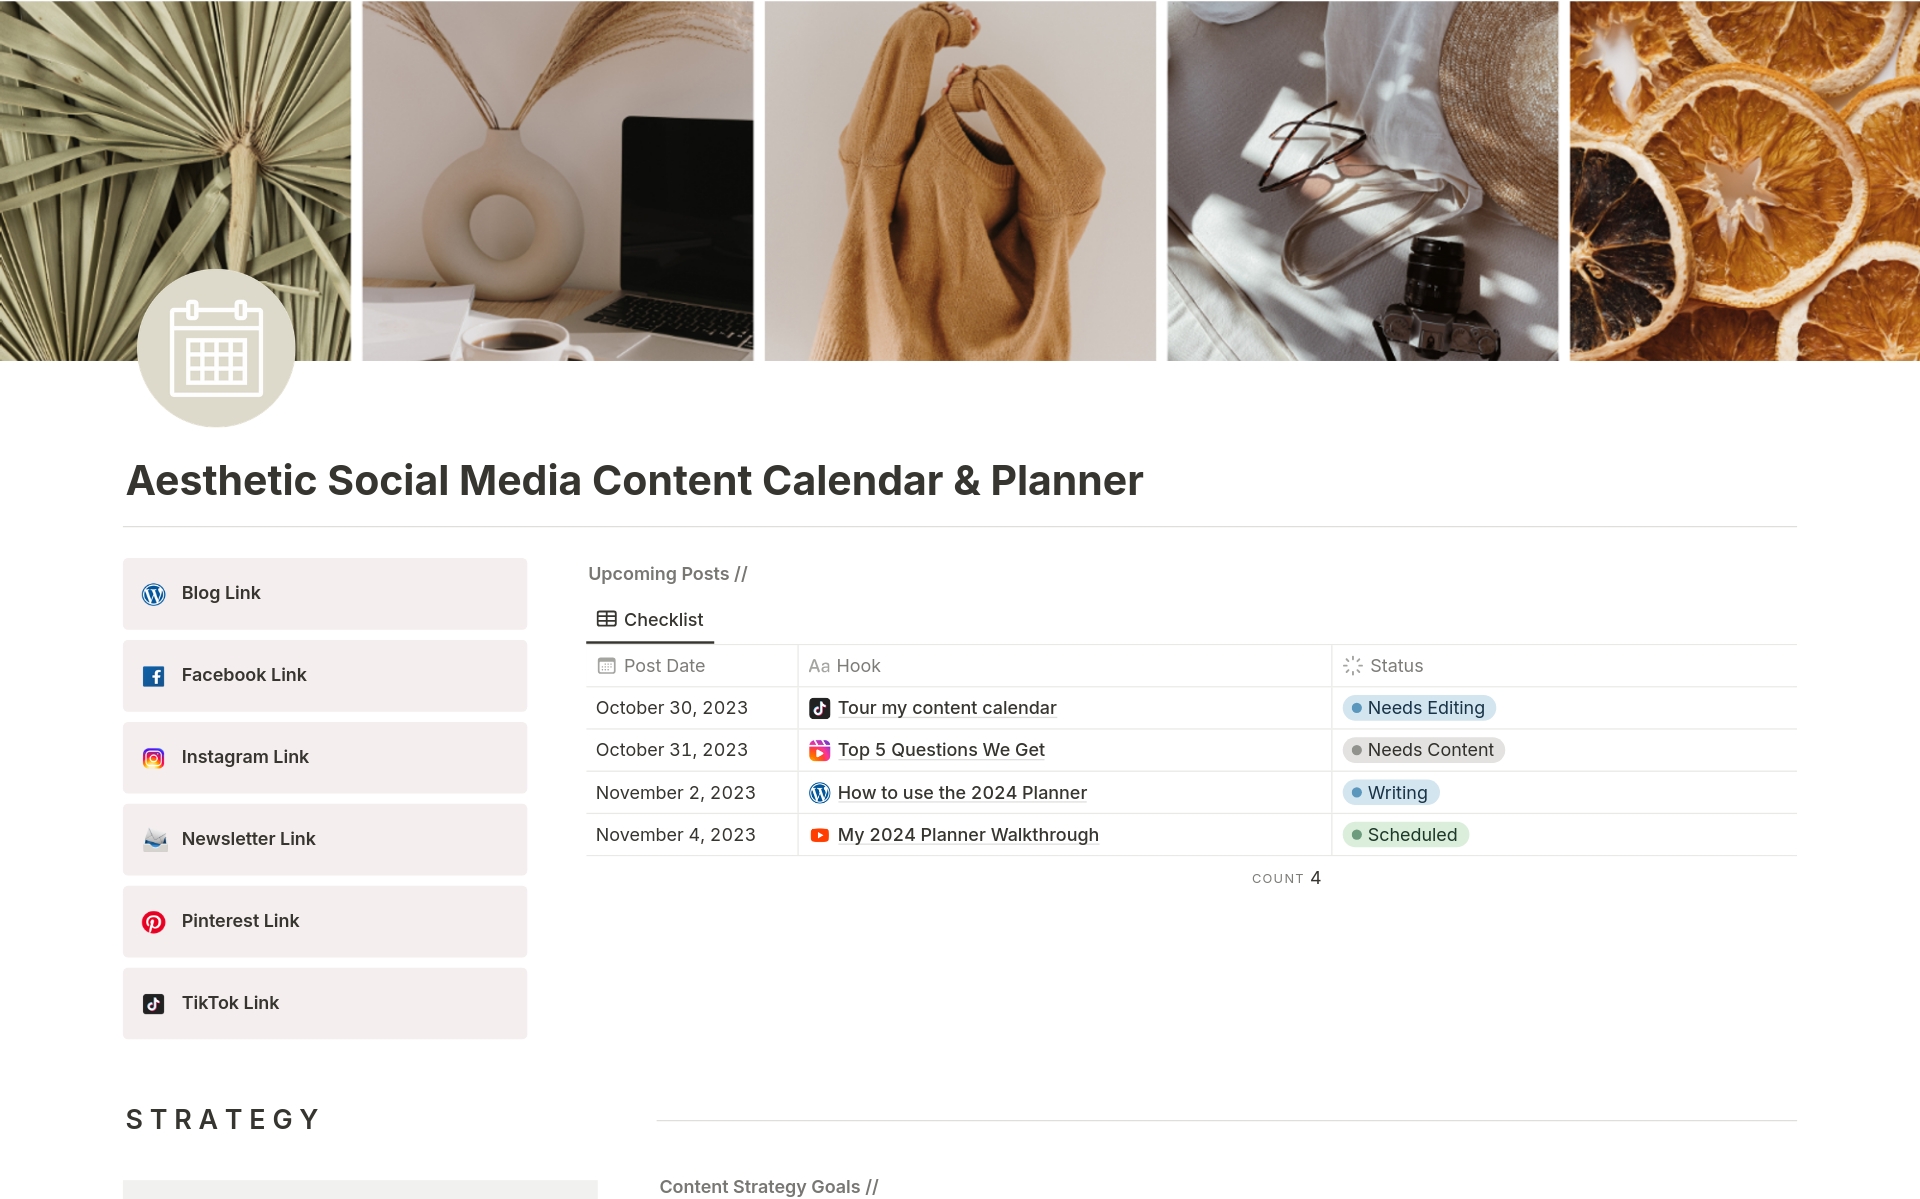 Uma prévia do modelo para Aesthetic Social Media Content Calendar & Planner